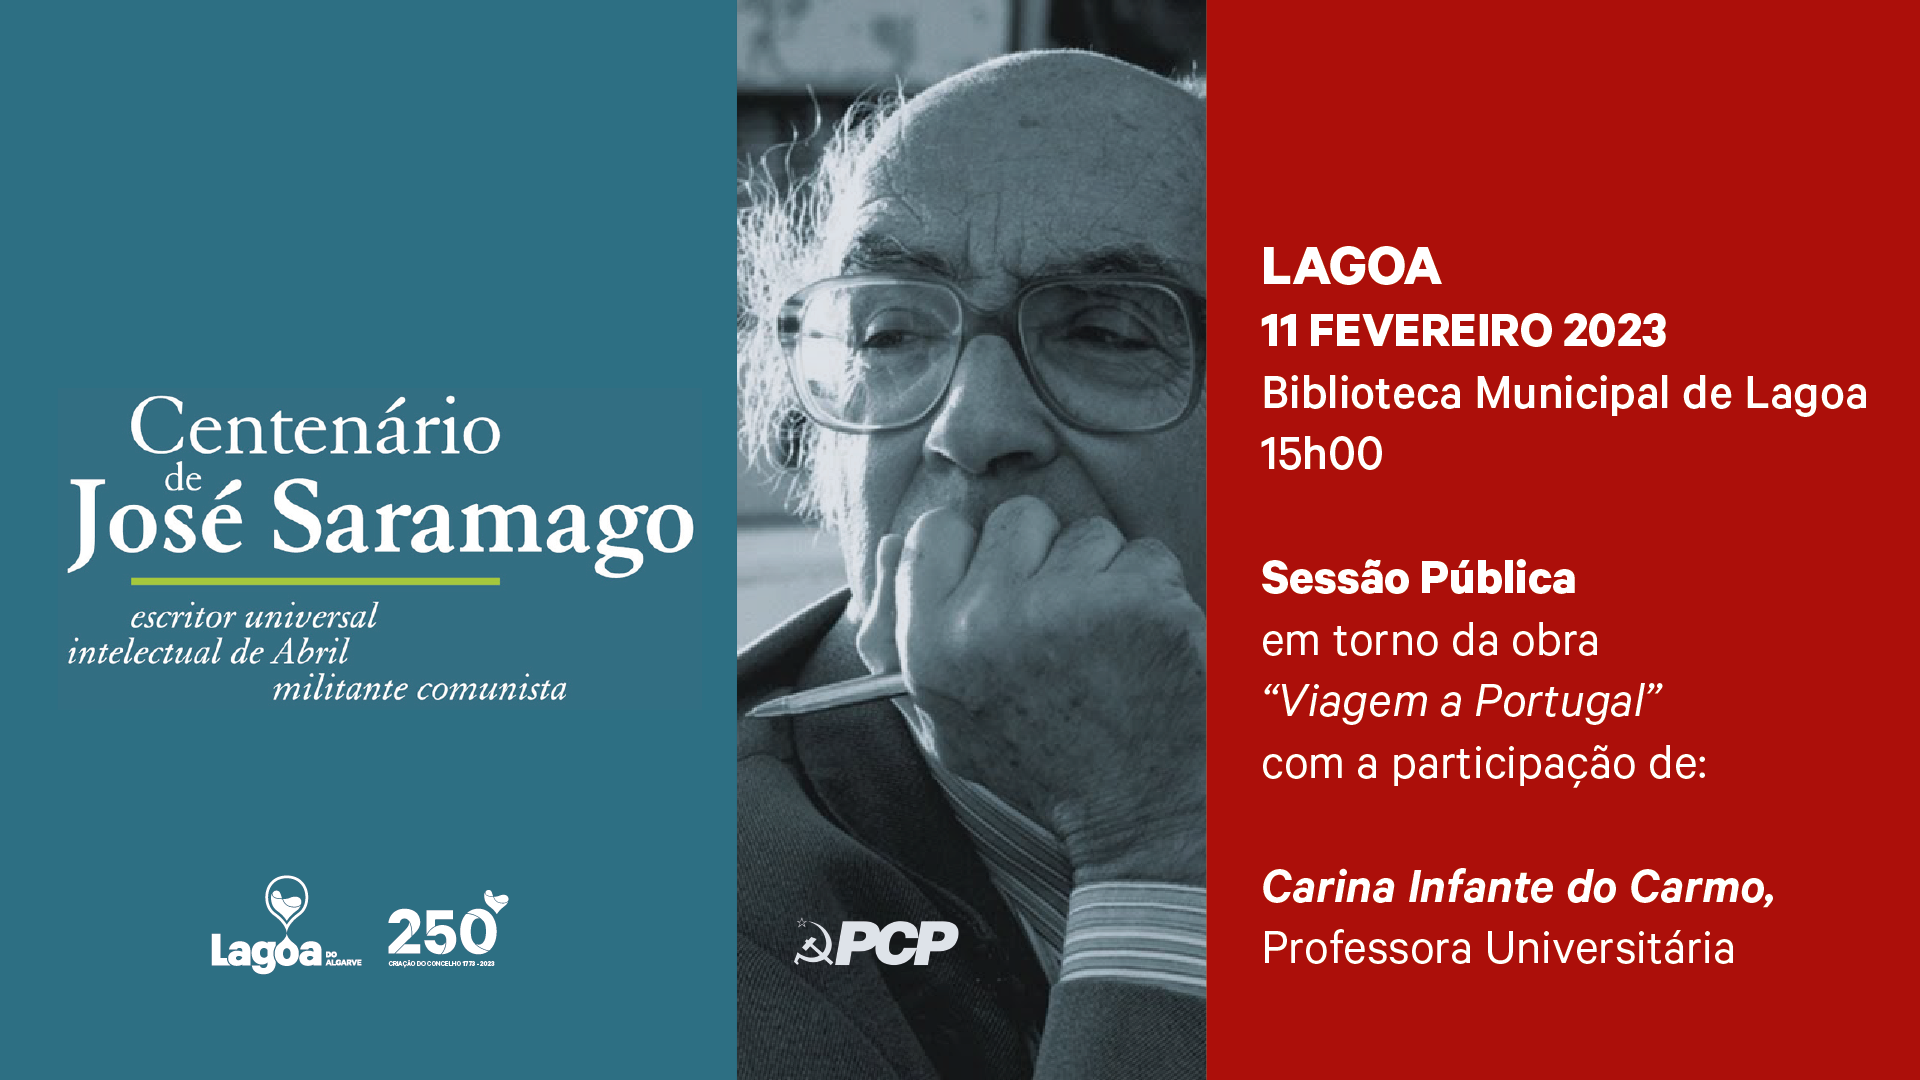 Conferência em torno da obra "Viagem a Portugal" de José Saramago 